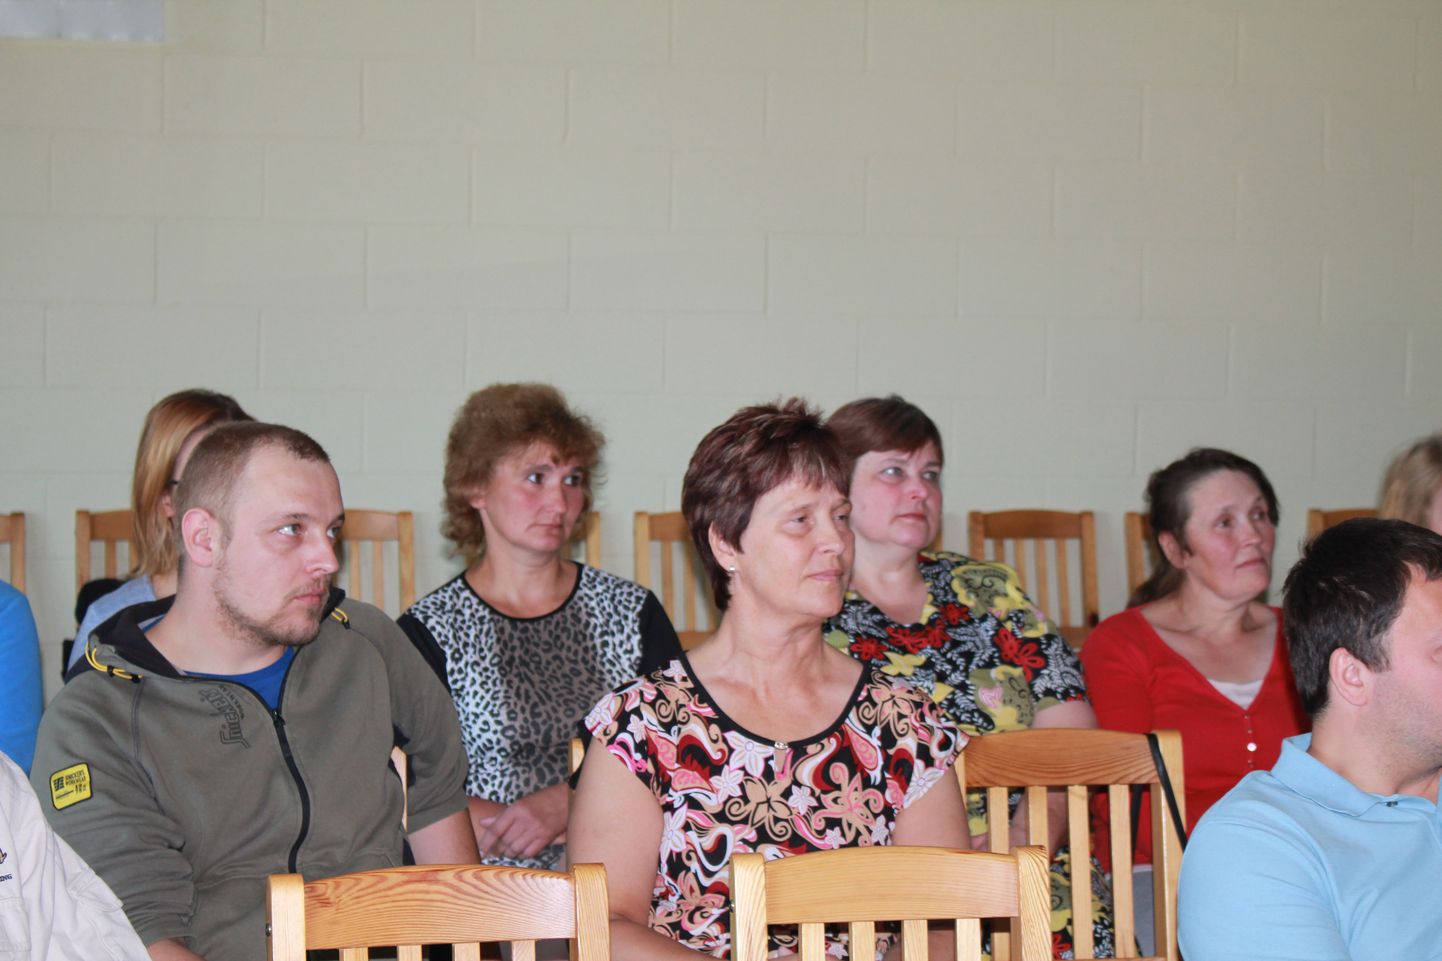 Järvamaal Väätsa vallas asuva Väätsa Agro Lõõla suurfarmikompleksis oli 14. juuni tavalisest erilisem. Farmi teise korruse seminariruumis toimus lõpuaktus, kus Eesti esimesed kutsetunnistused ulatati 14 lüpsjale.